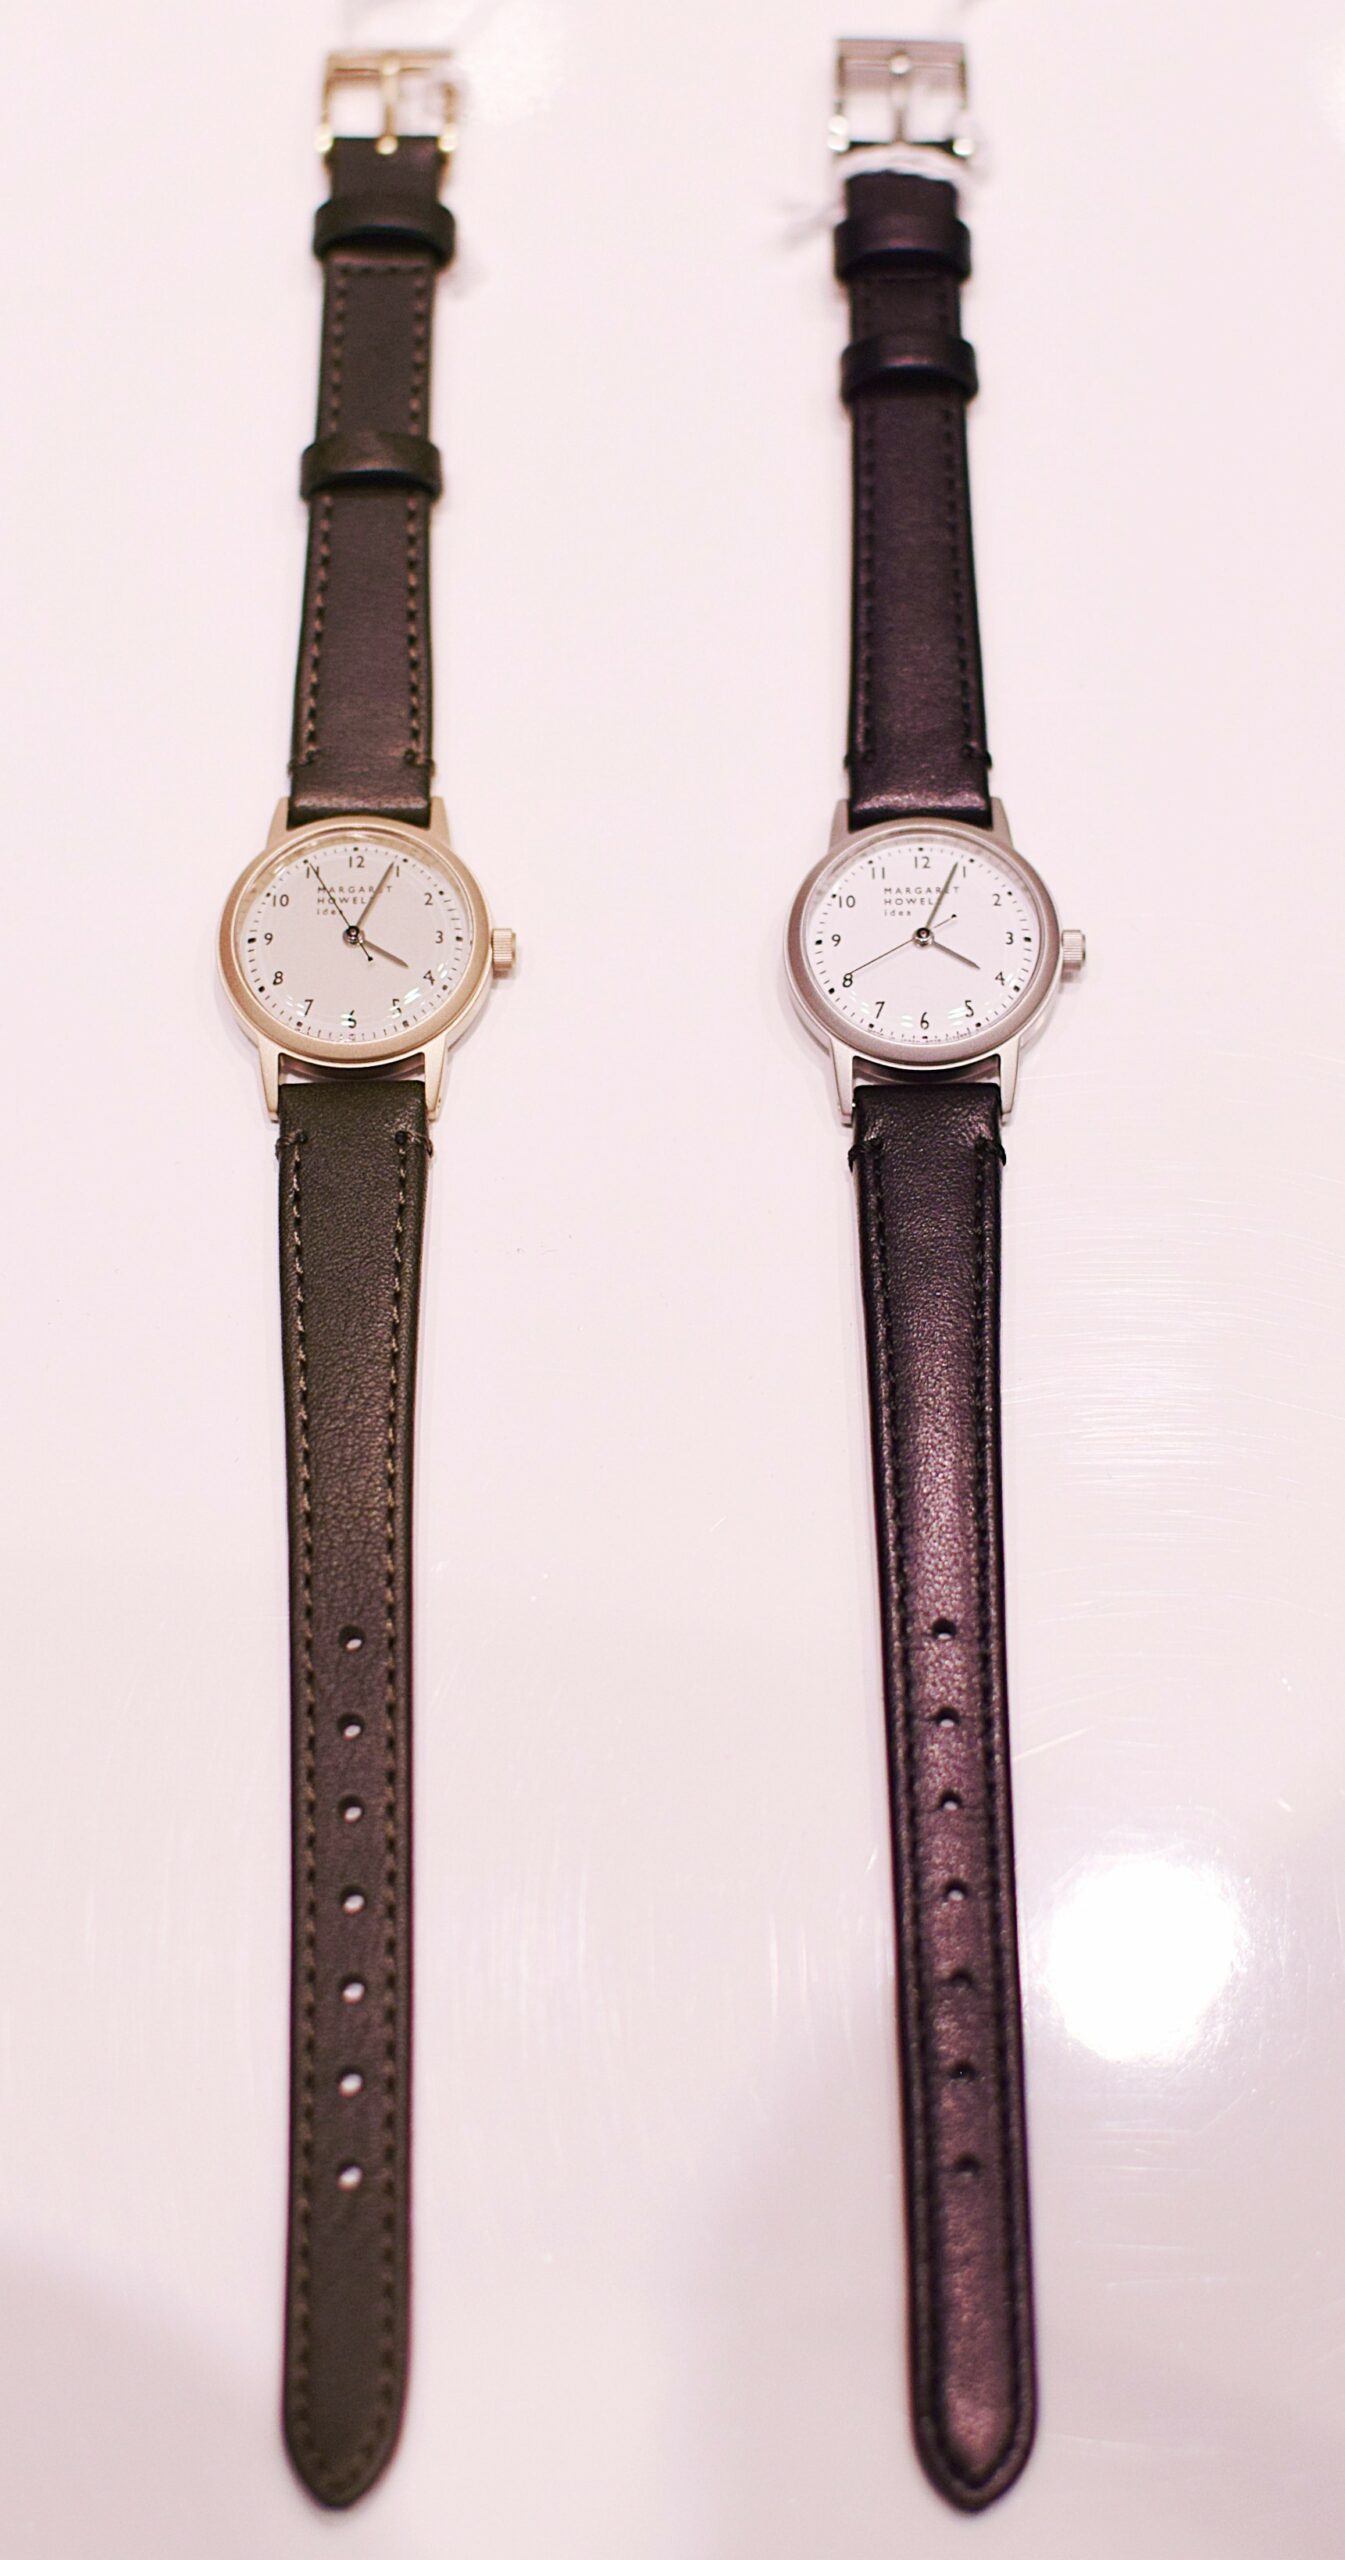 MARGARET HOWELL idea】小ぶりで華奢な腕時計 ✍move COCOSA熊本店 